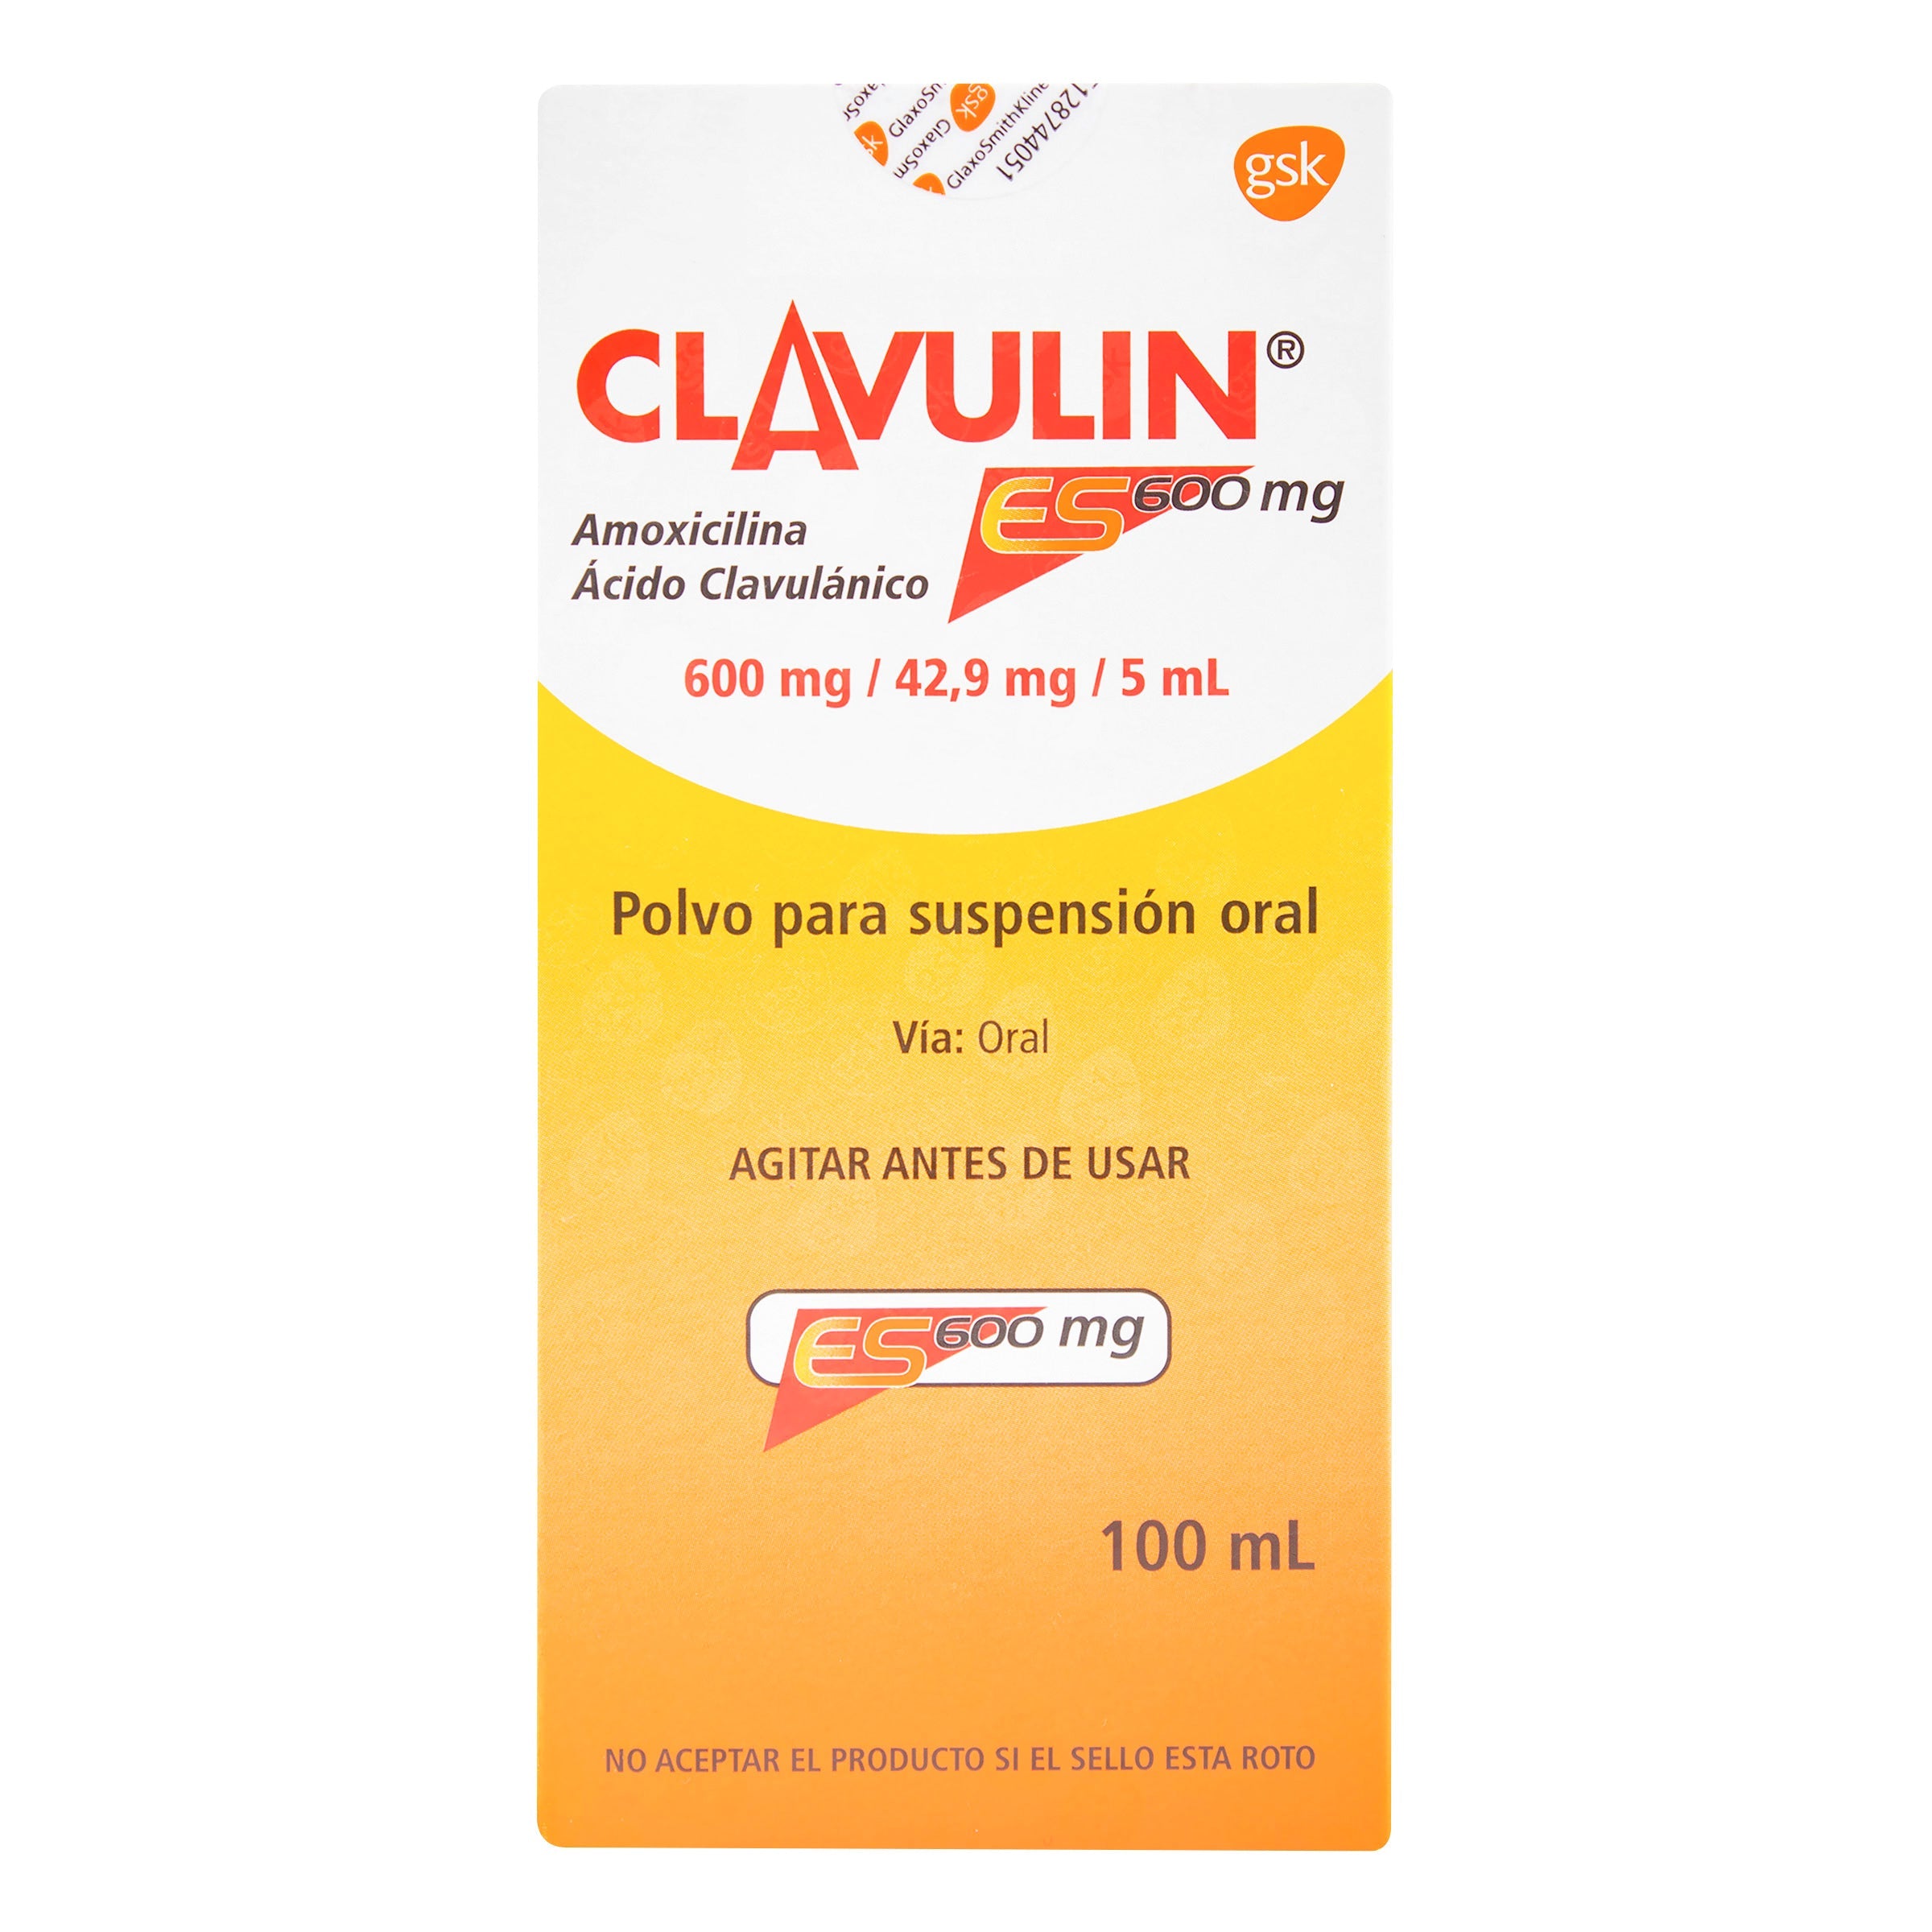 CLAVULIN ES 600 MG 100 ML